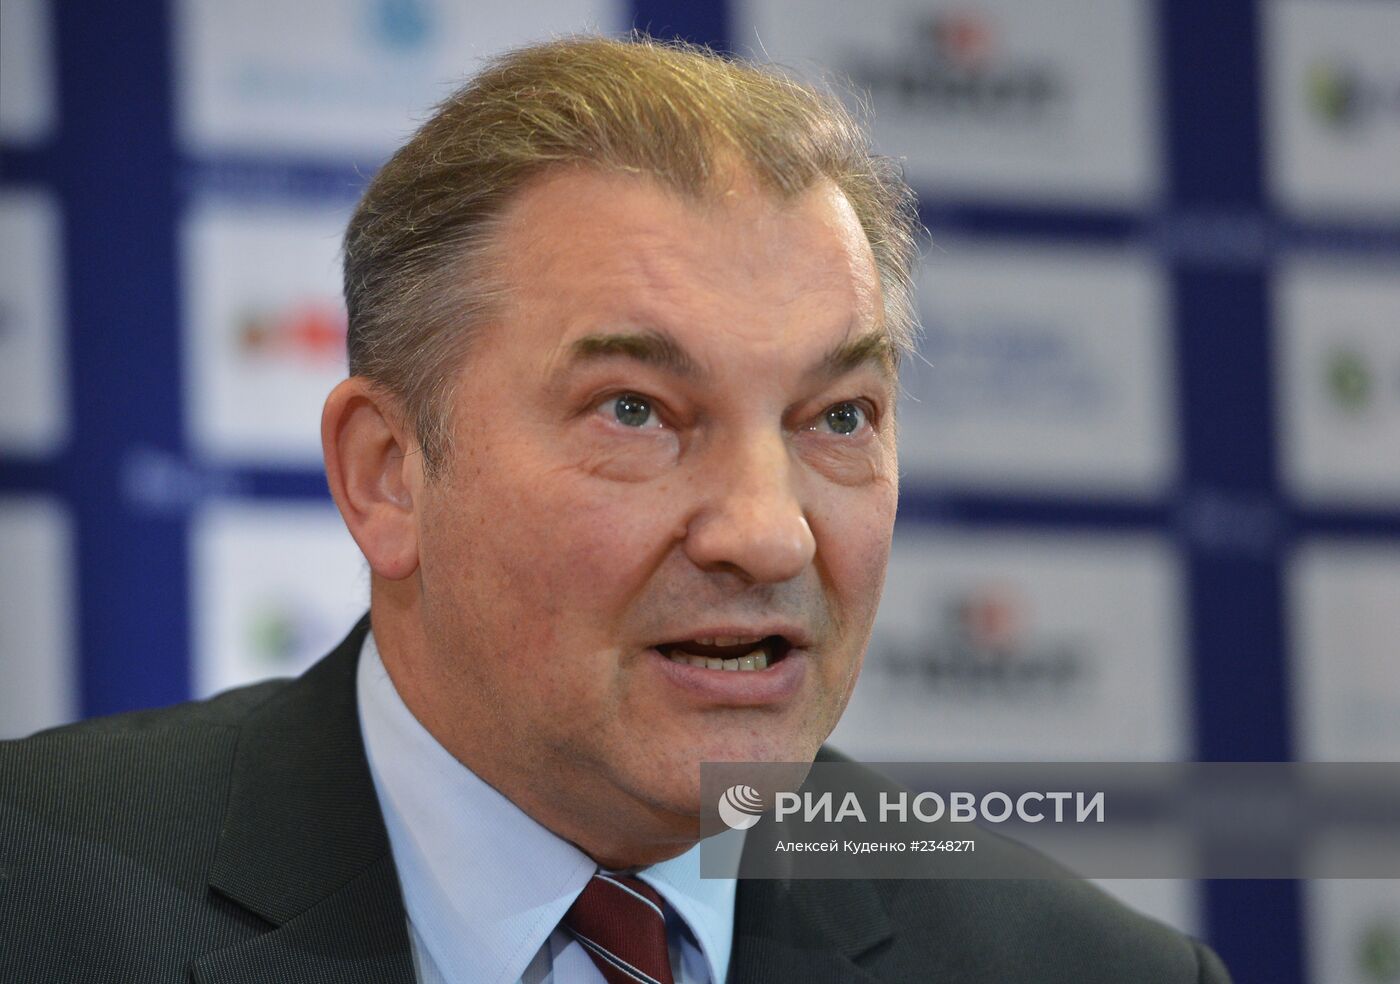 Пресс-конференция Федерации хоккея России